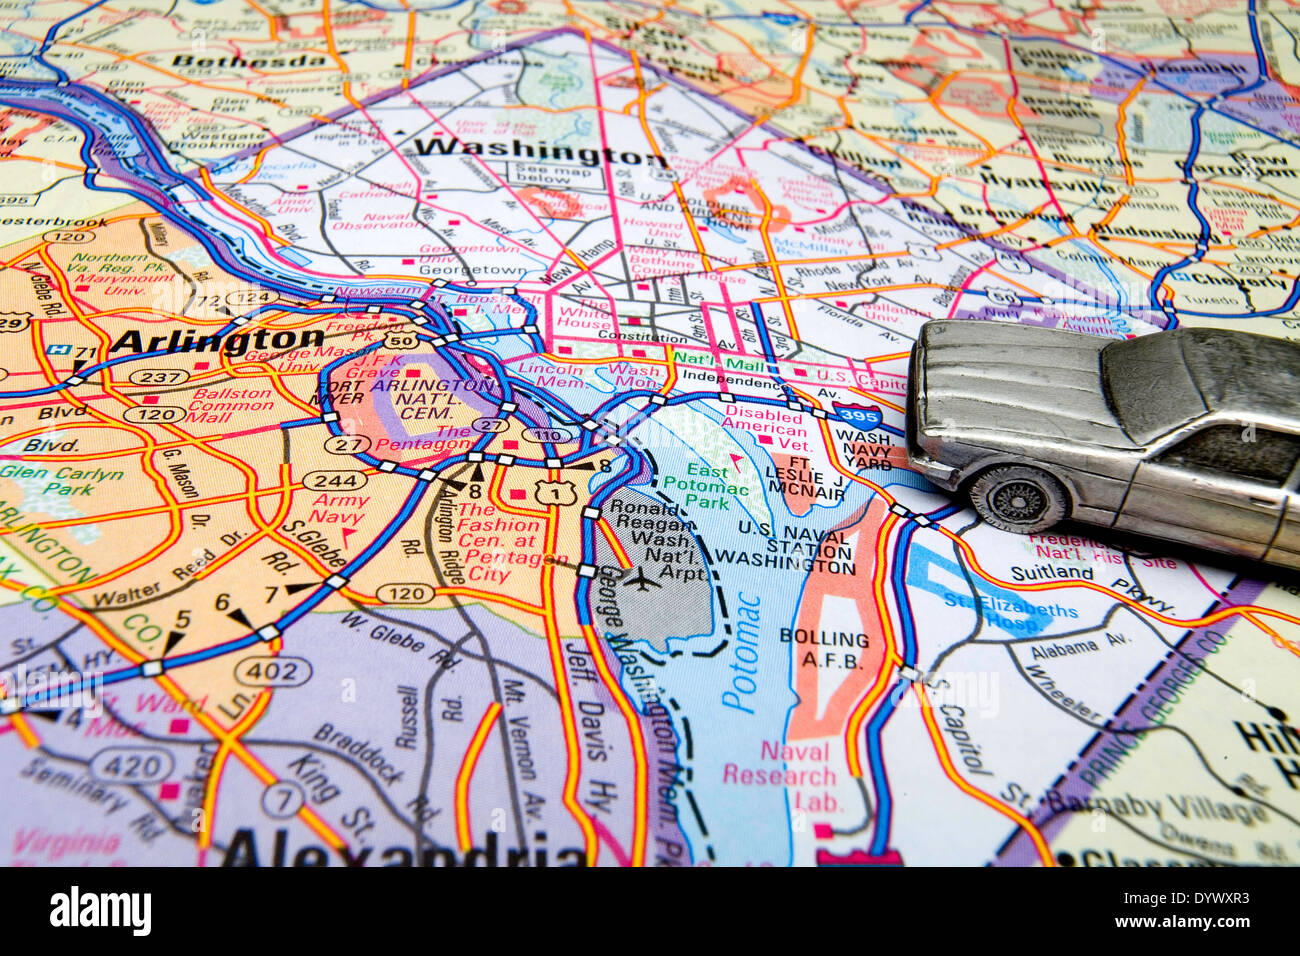 Modell-Limousine auf einer Karte von Washington, DC. Stockfoto